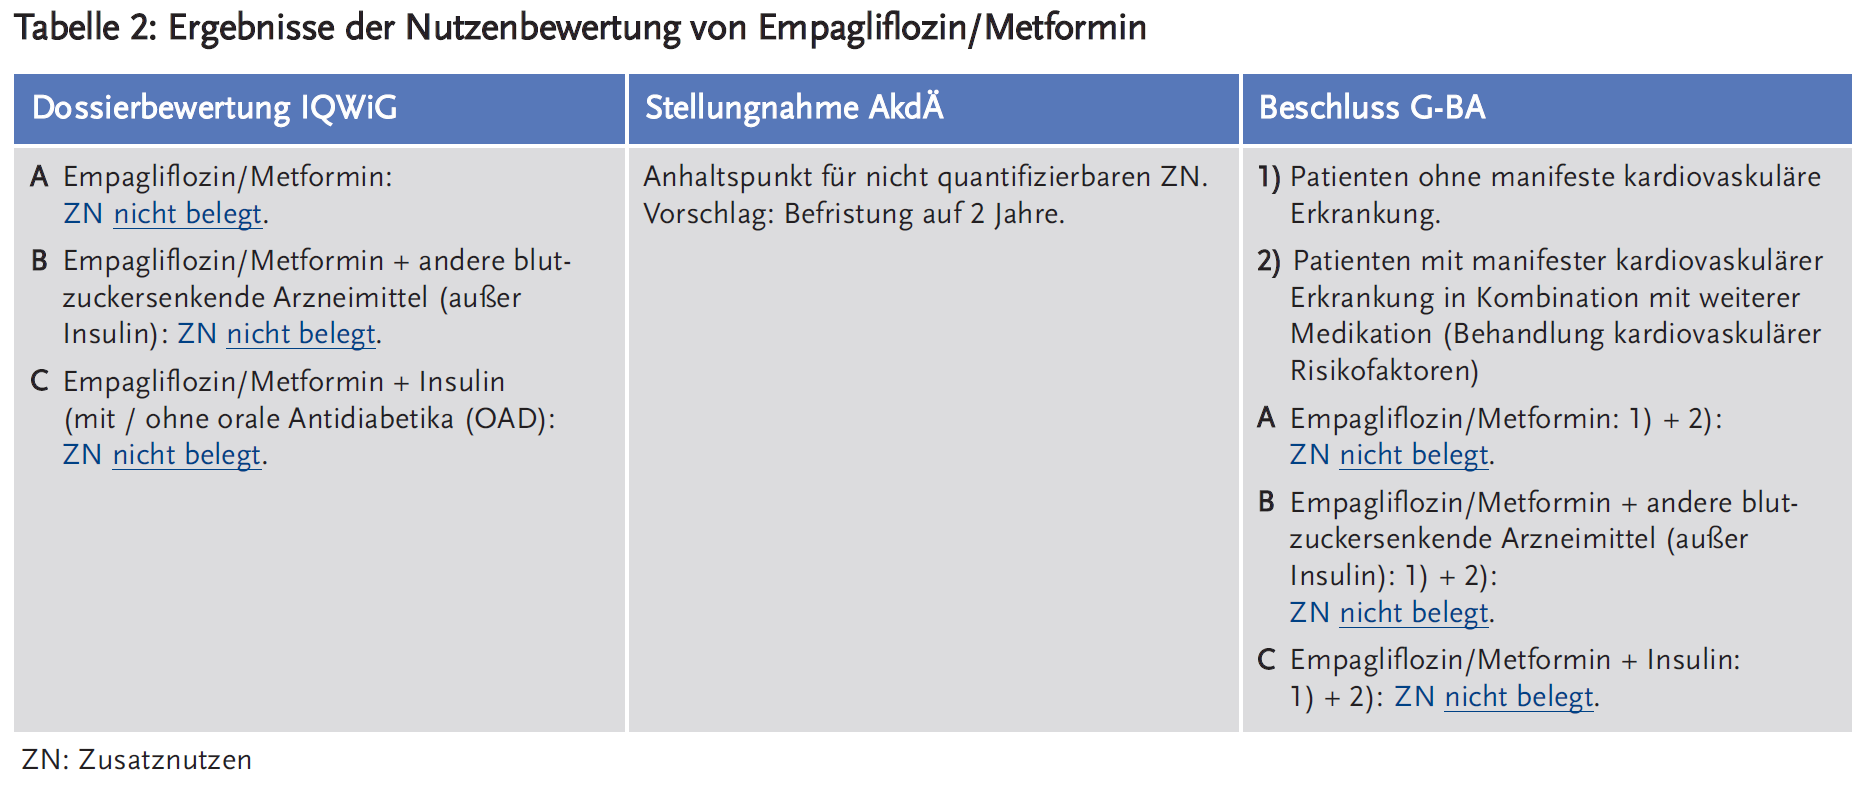 Tabelle 2: Ergebnisse der Nutzenbewertung von Empagliflozin/Metformin